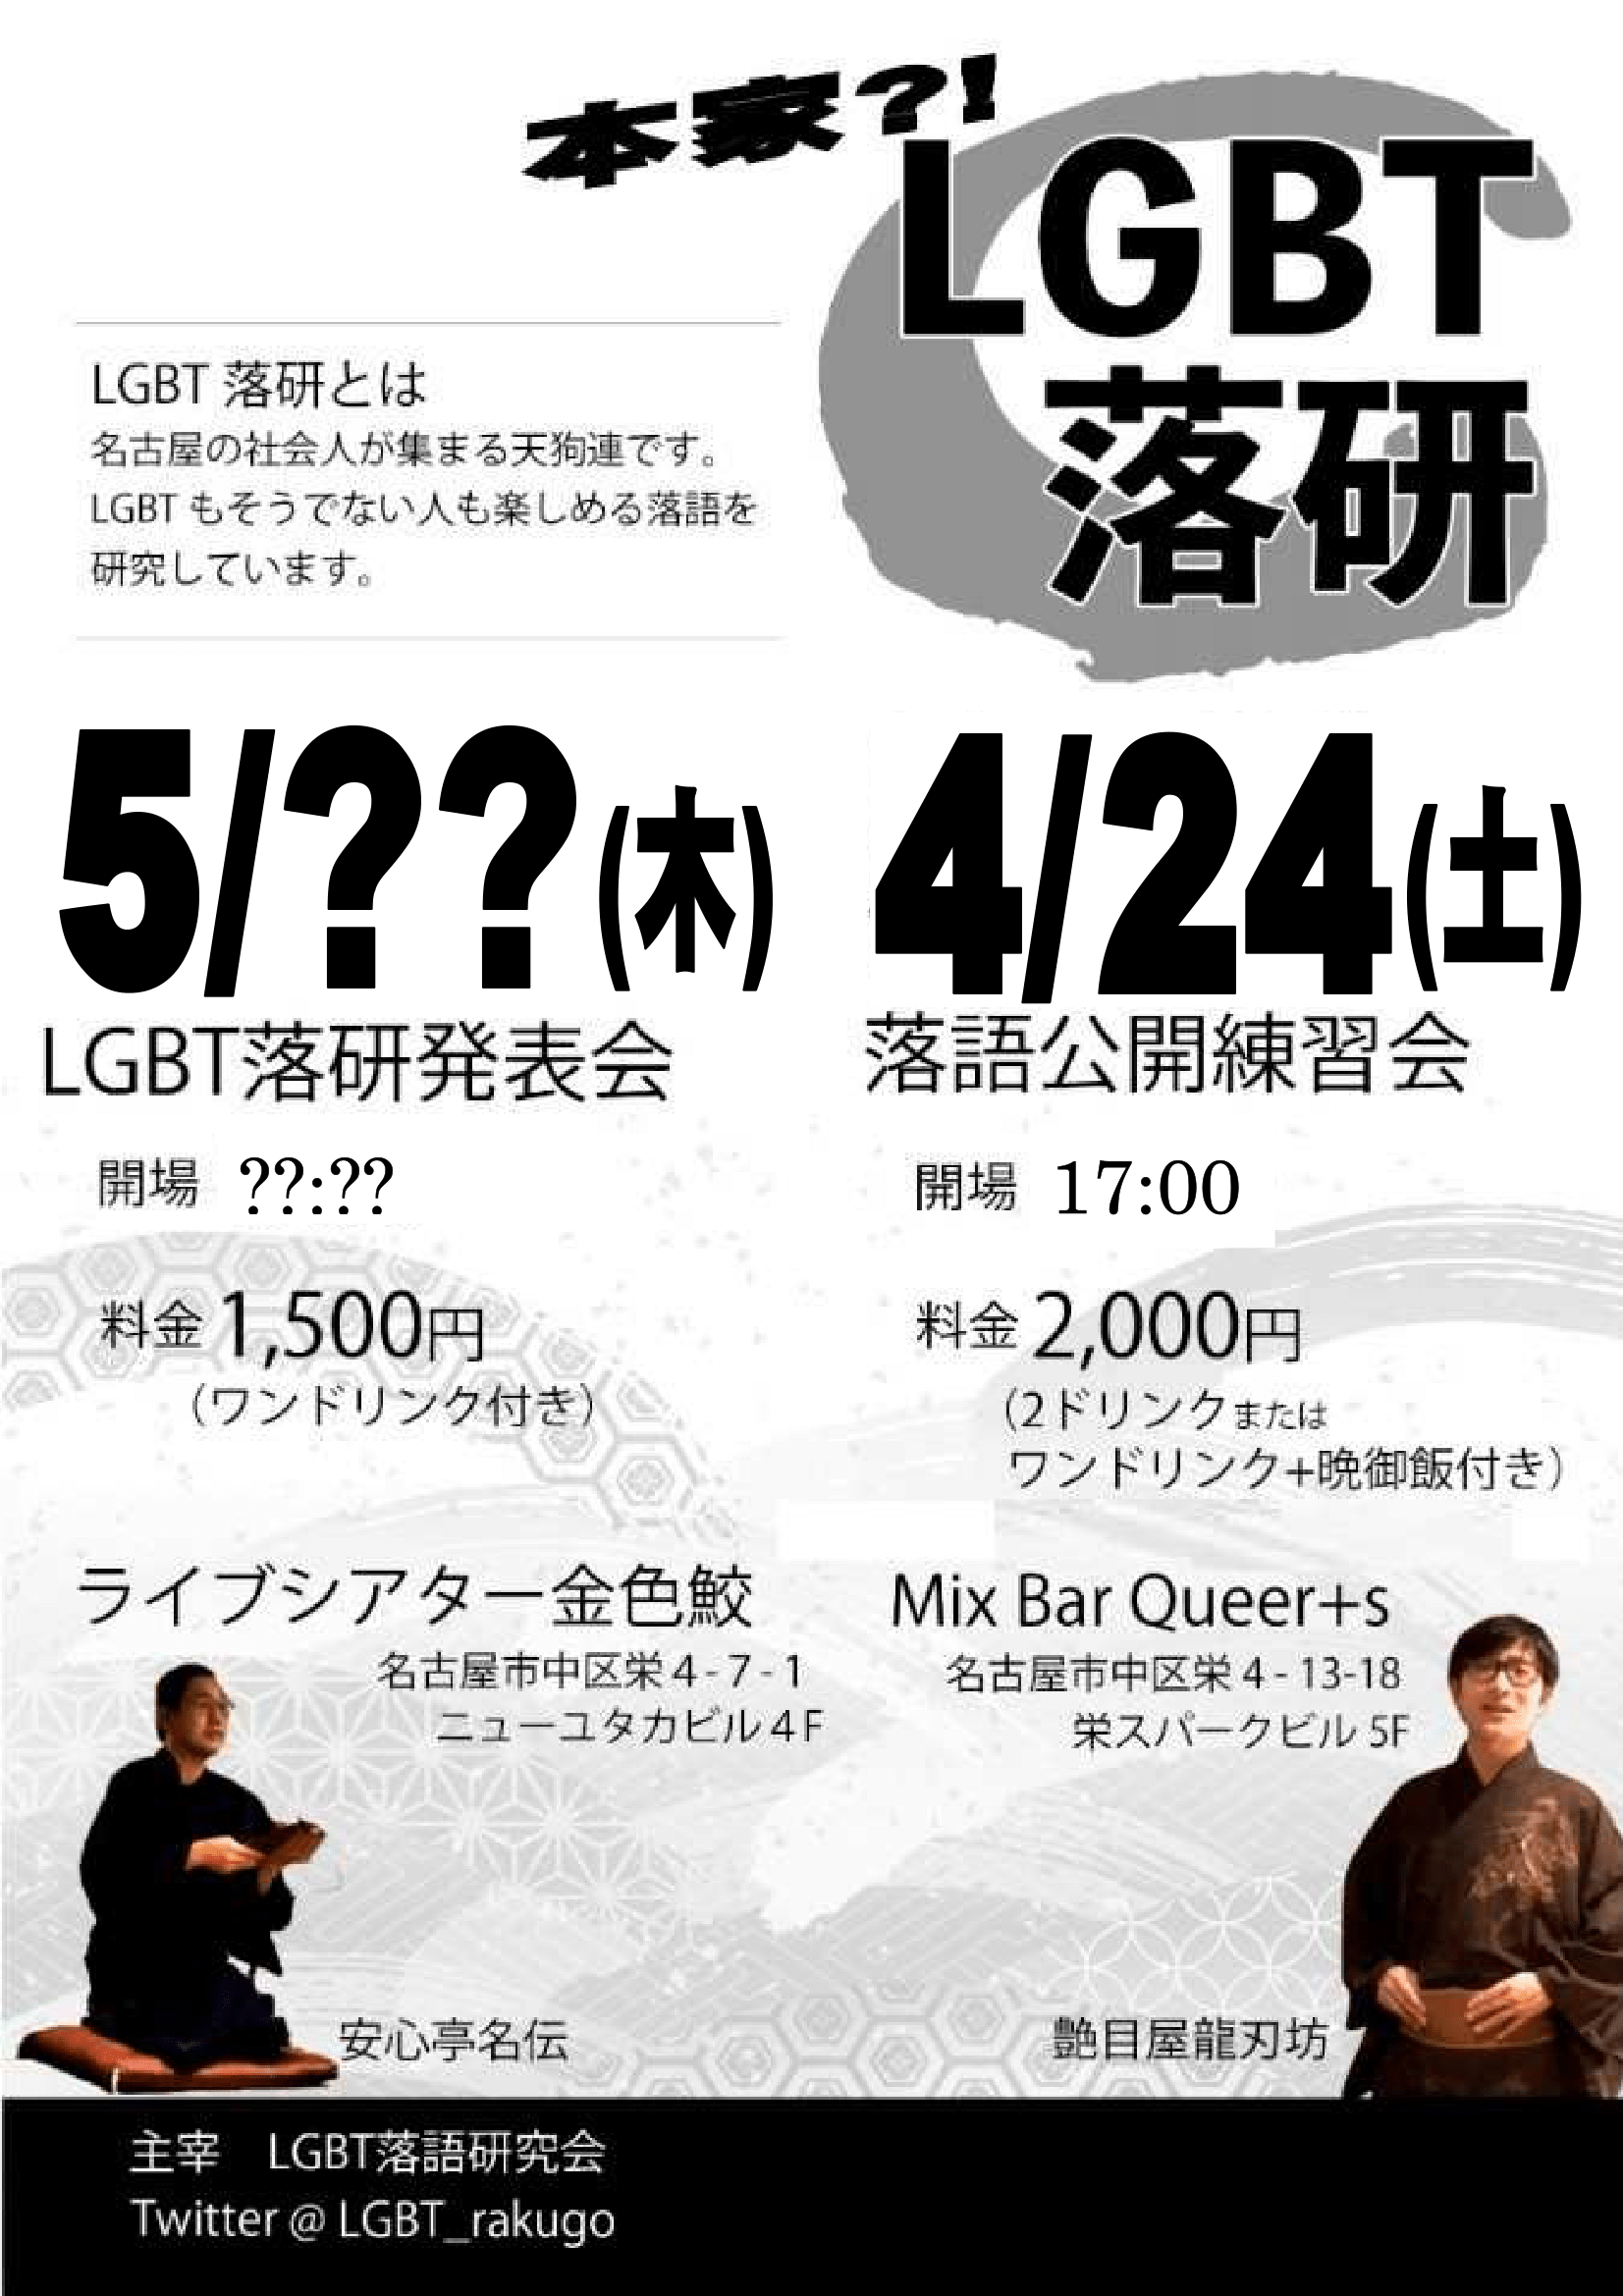 【4/24(土)】LGBT落語研究会・公開練習会(夕食会)